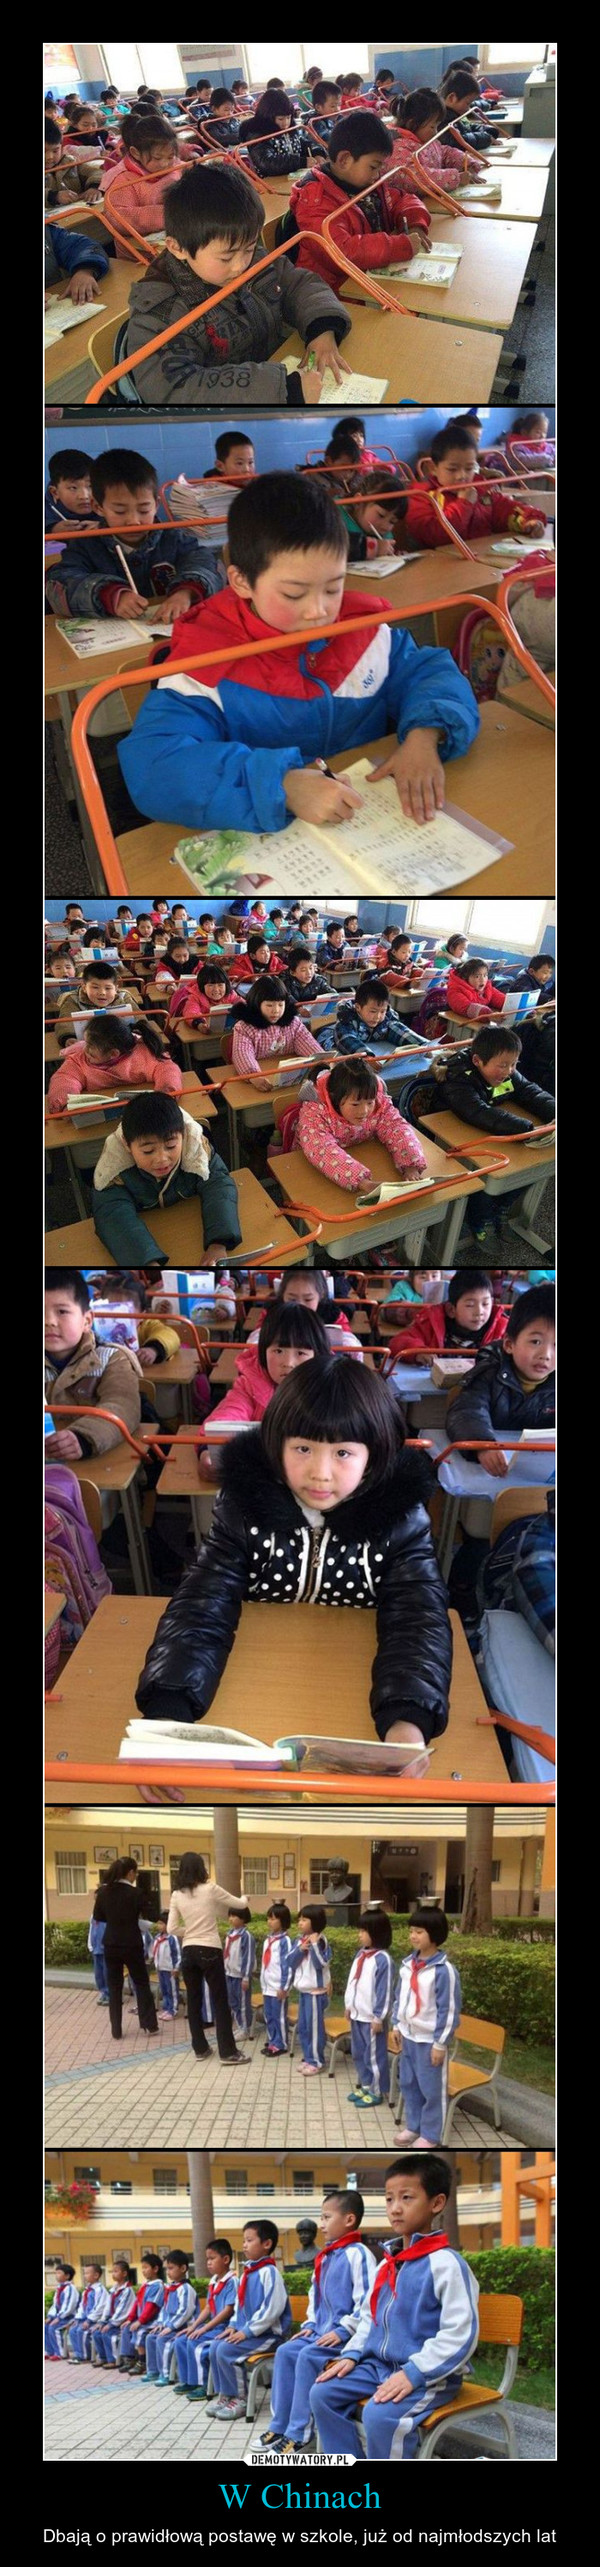 W Chinach – Dbają o prawidłową postawę w szkole, już od najmłodszych lat 